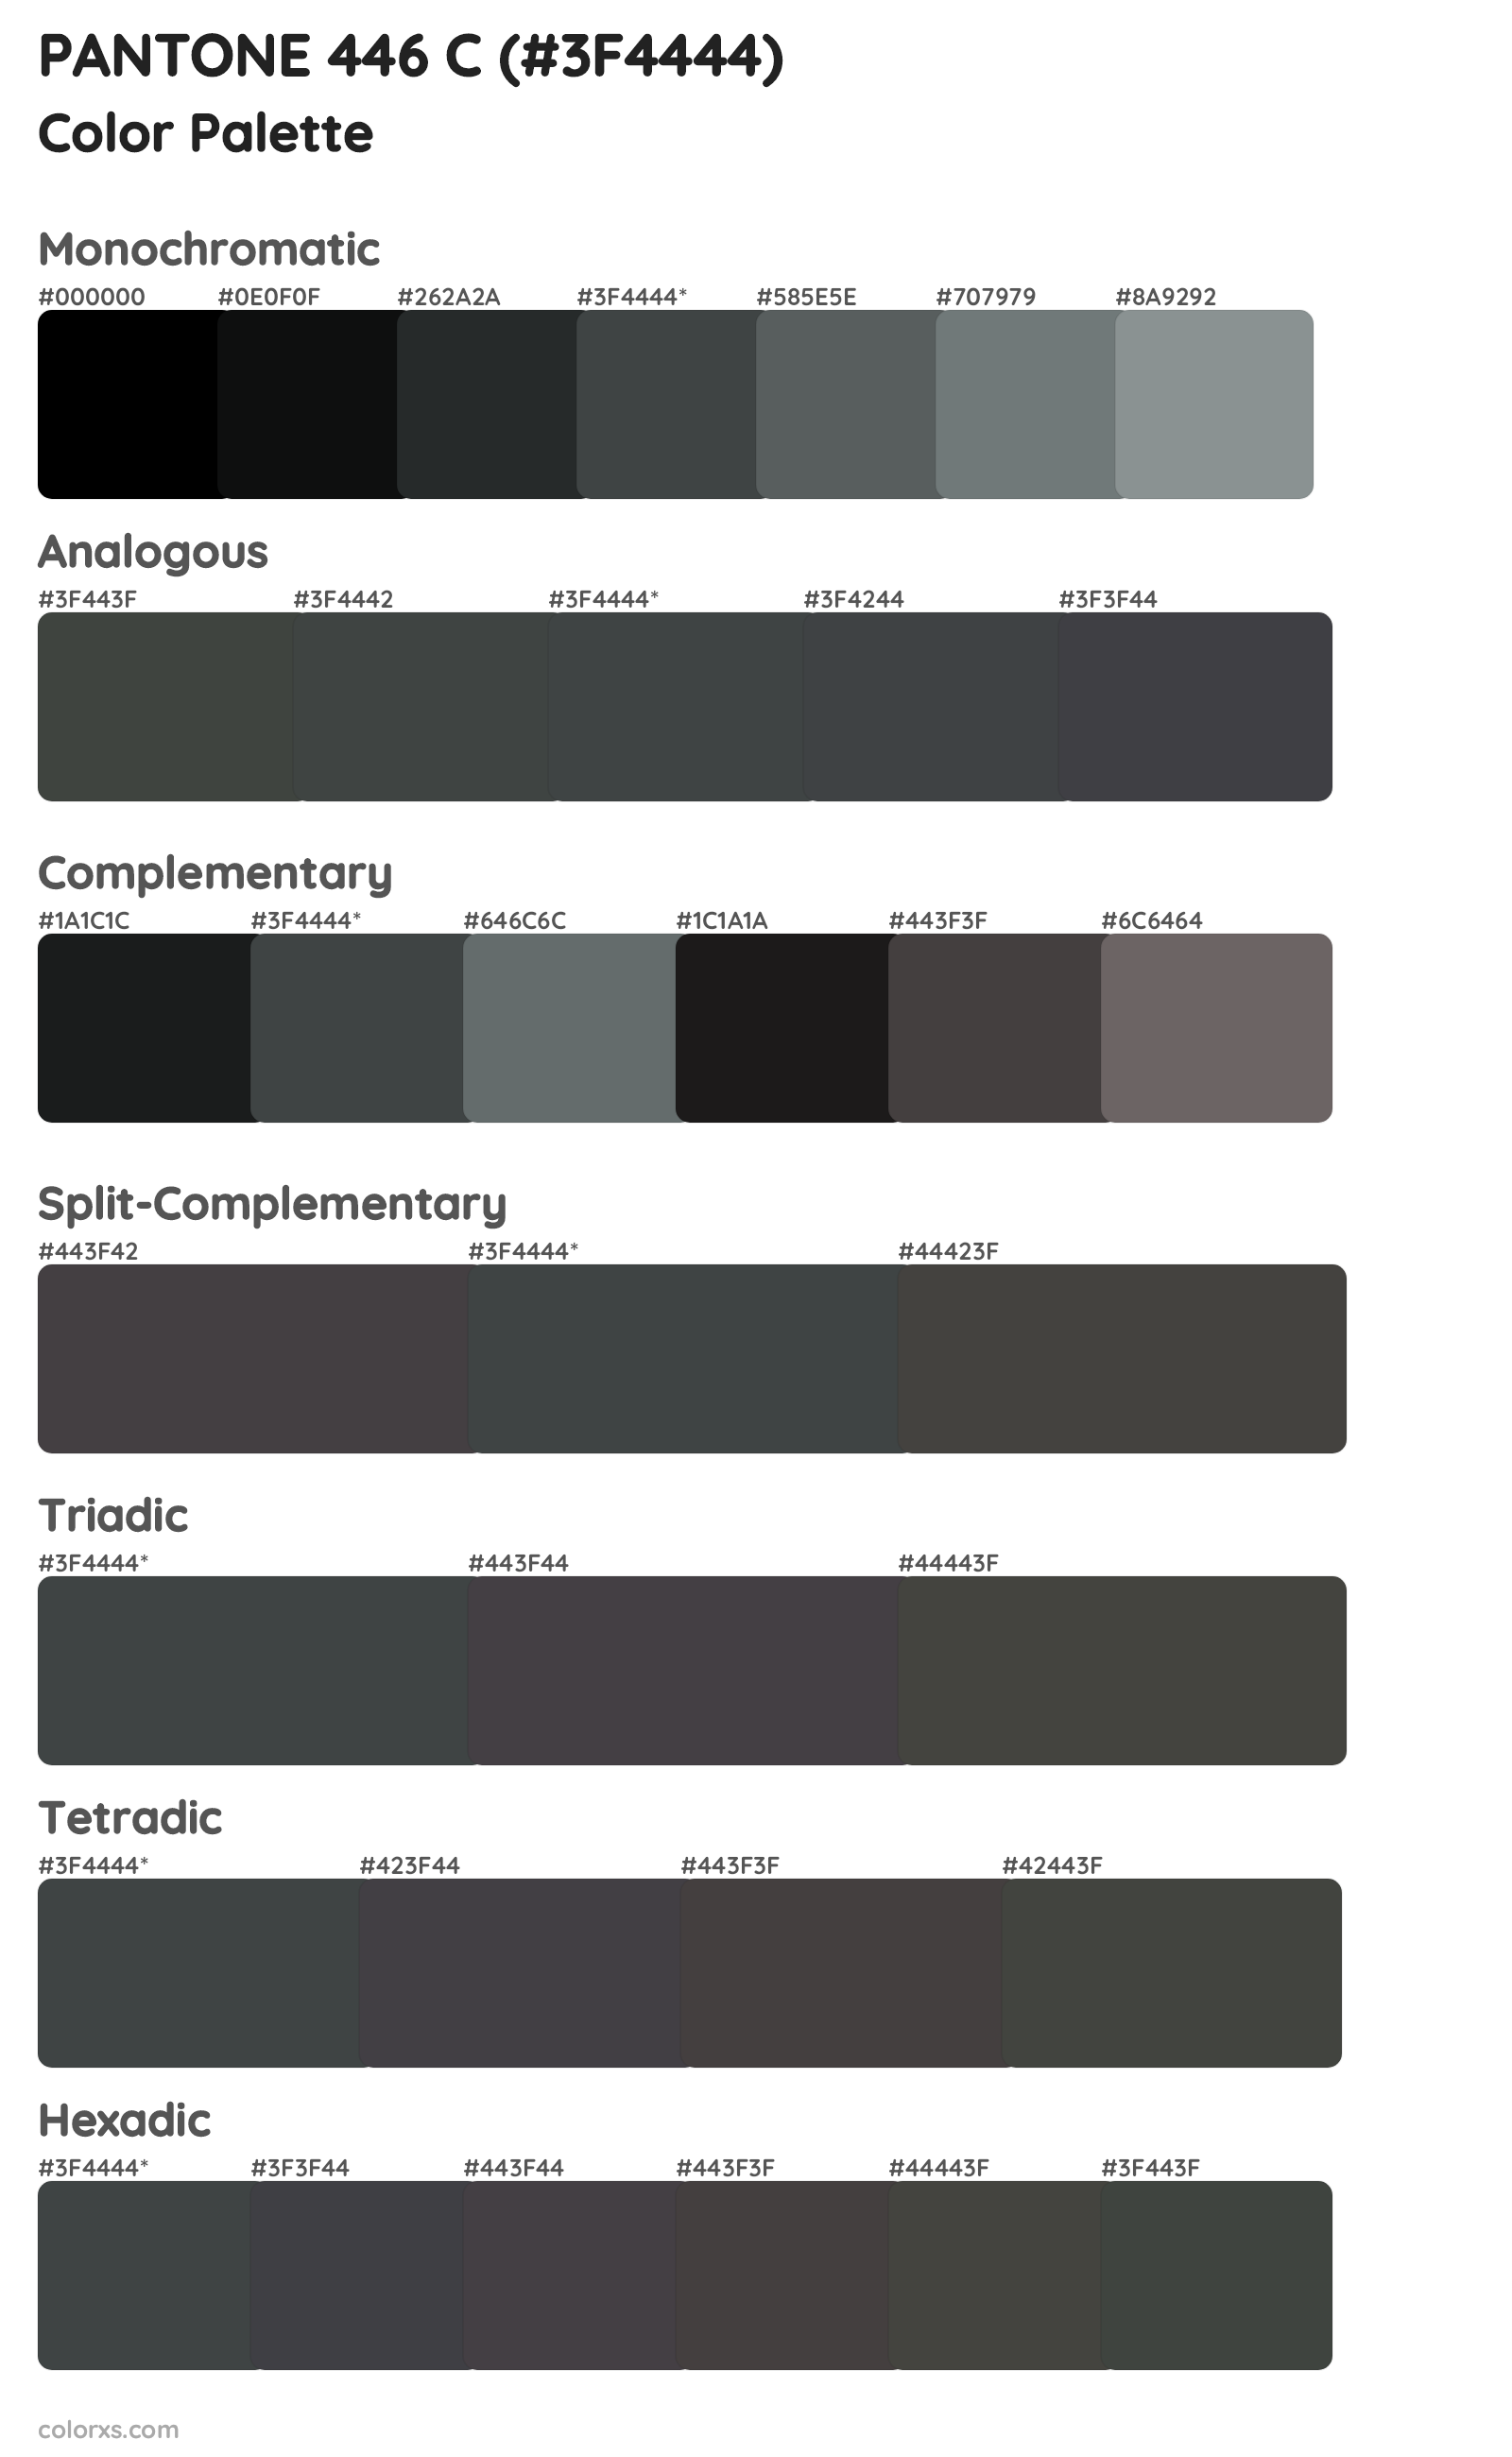 PANTONE 446 C Color Scheme Palettes